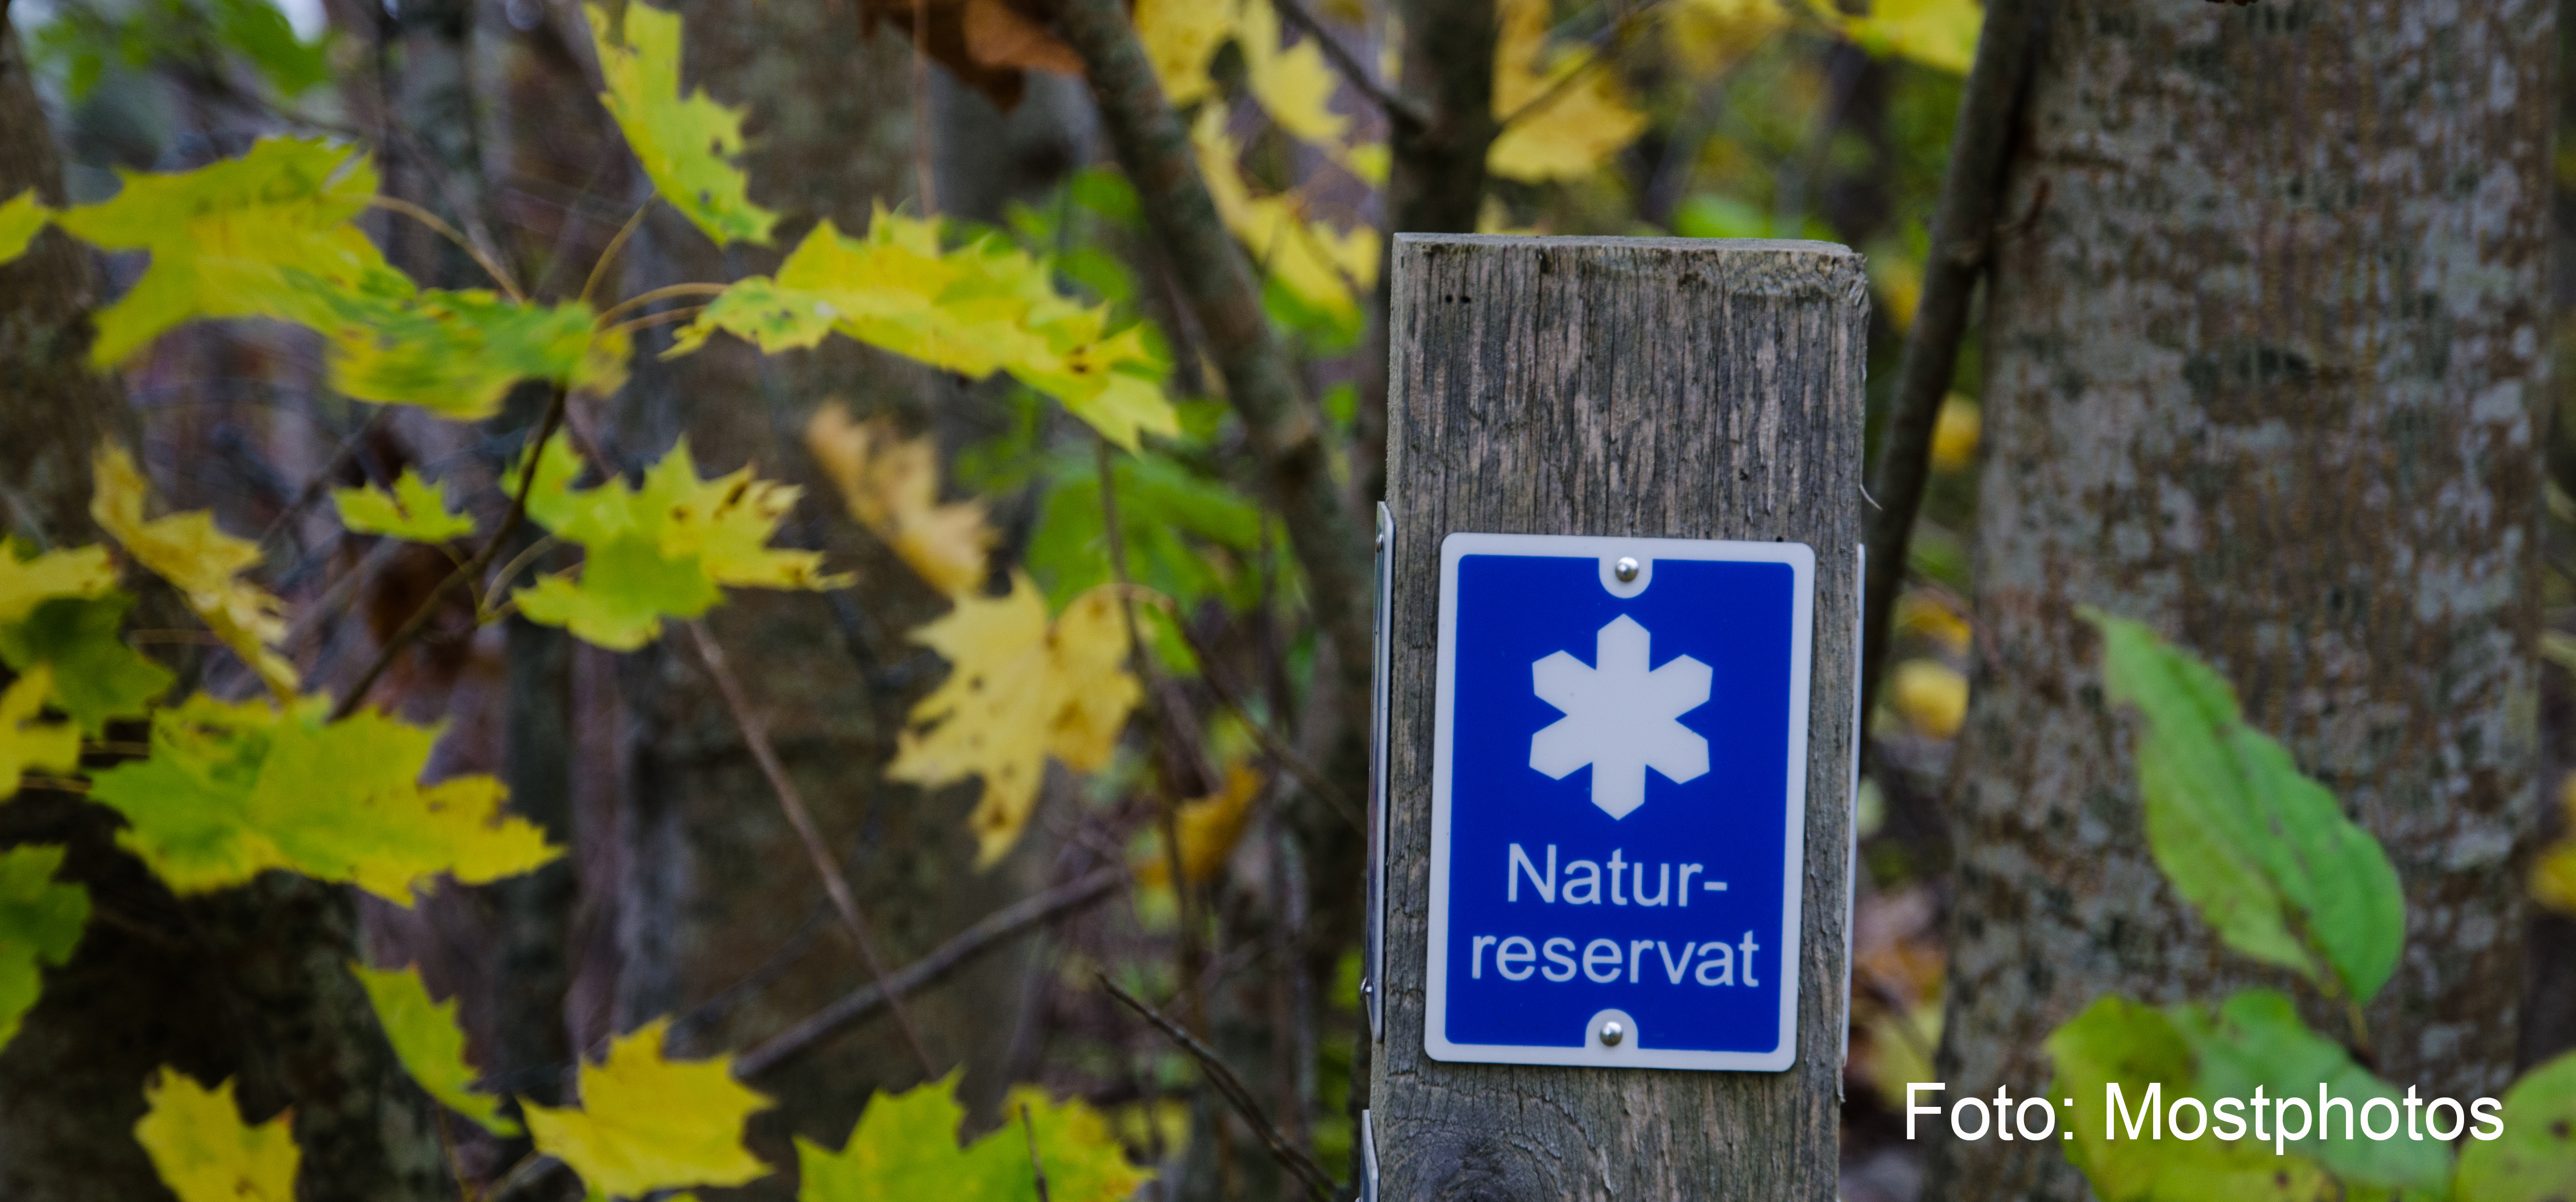 Bilden visar en skylt för naturrreservat med gröna löv bakom.